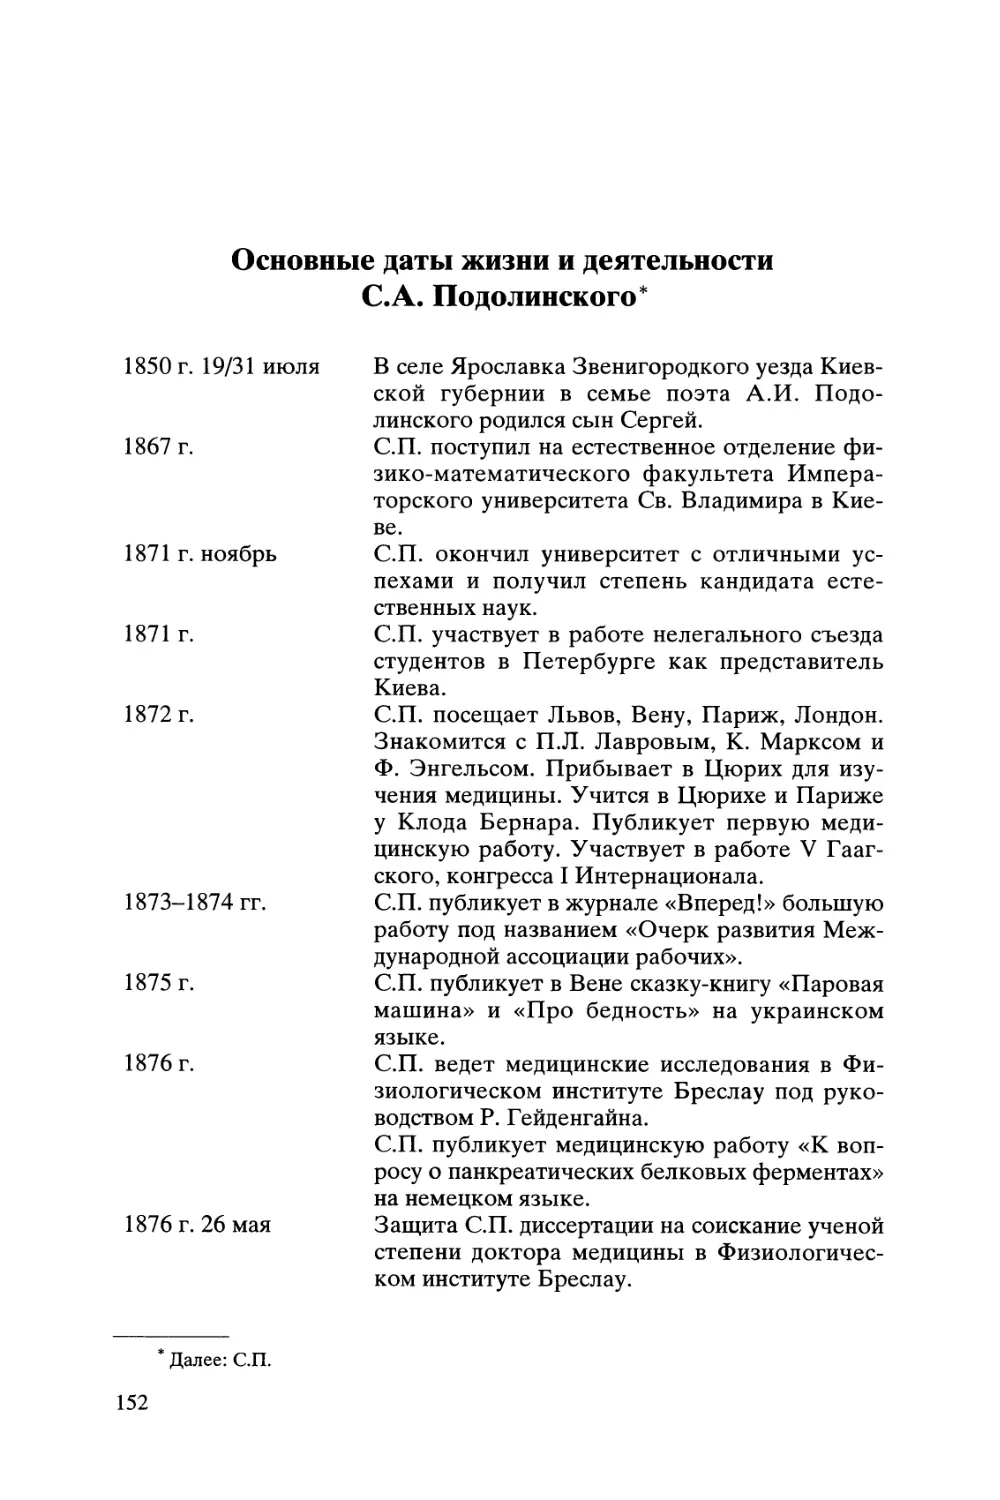 Основные даты жизни и деятельности С.А. Подолинского